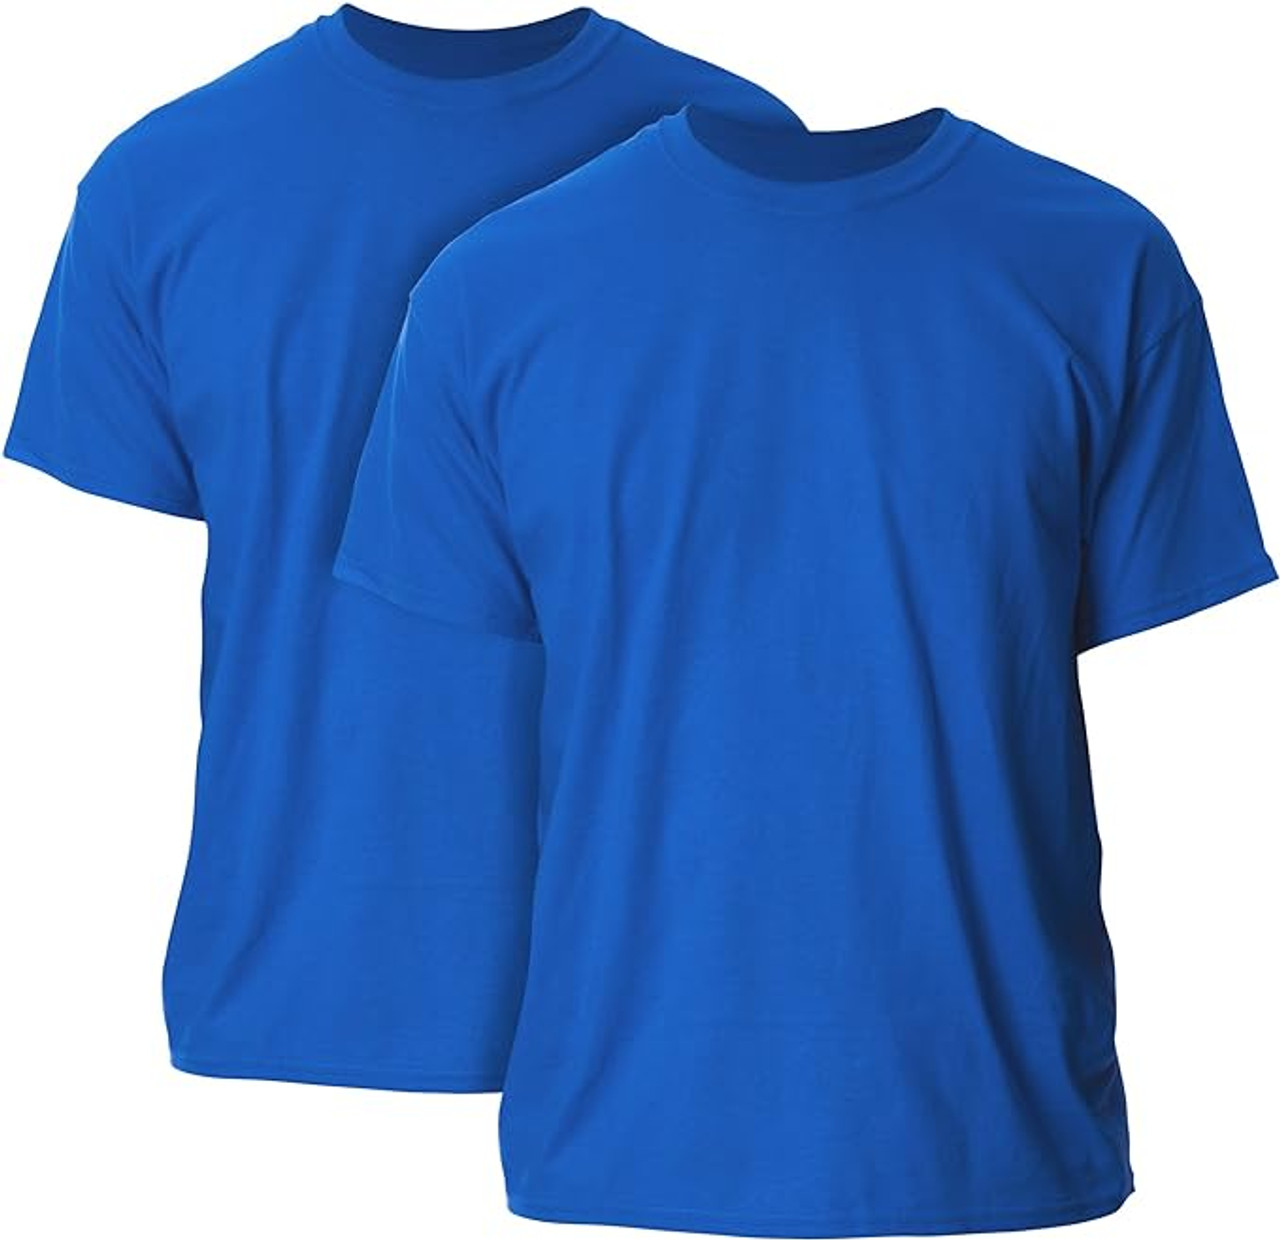 Gildan Heavyweight 100% Cotton T-Shirt - Navy Blue, Small